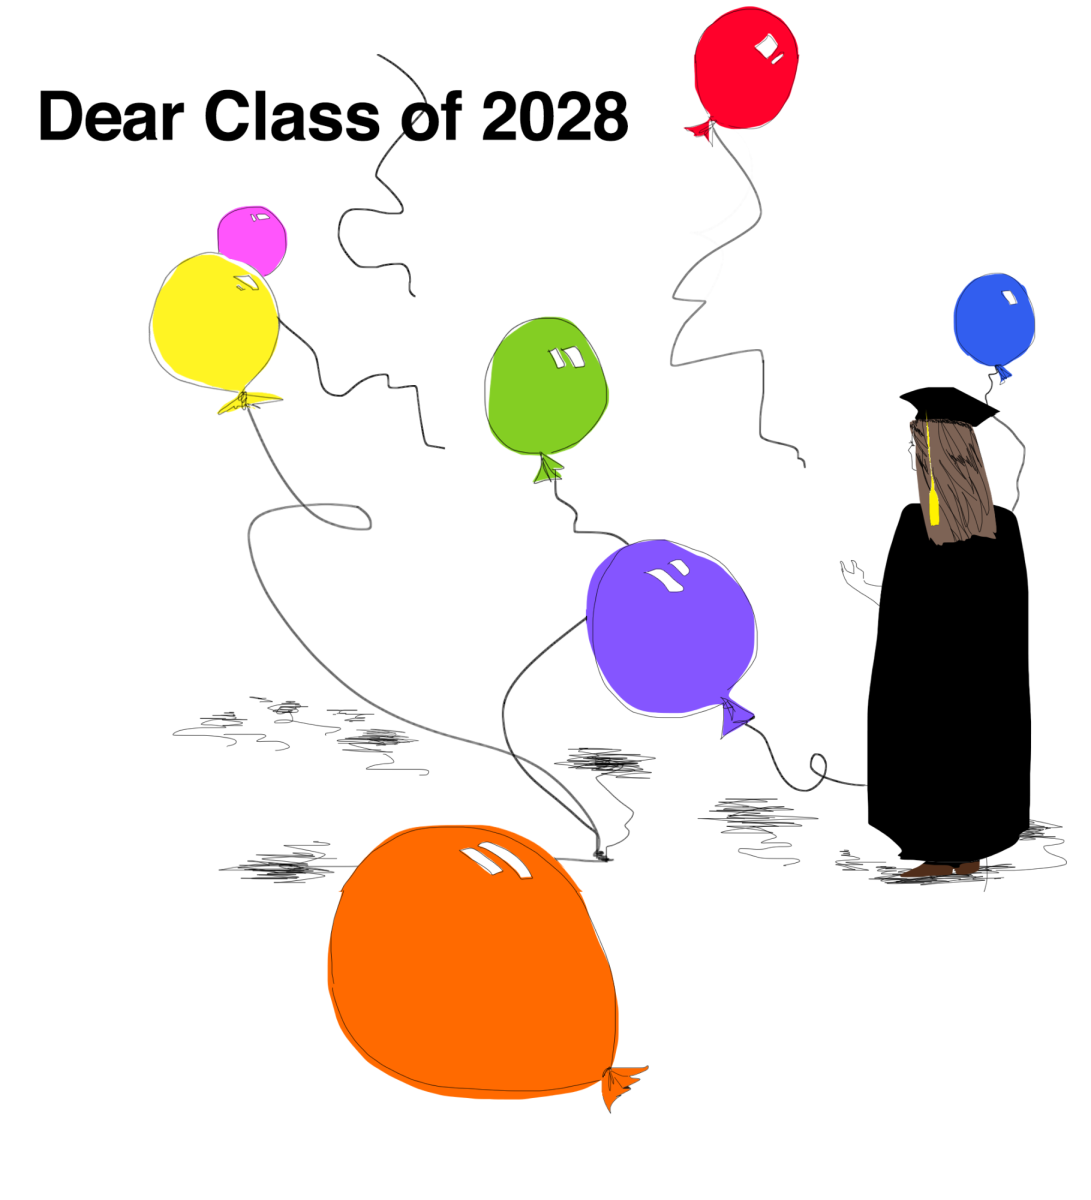 Editorial: Dear Class of 2028